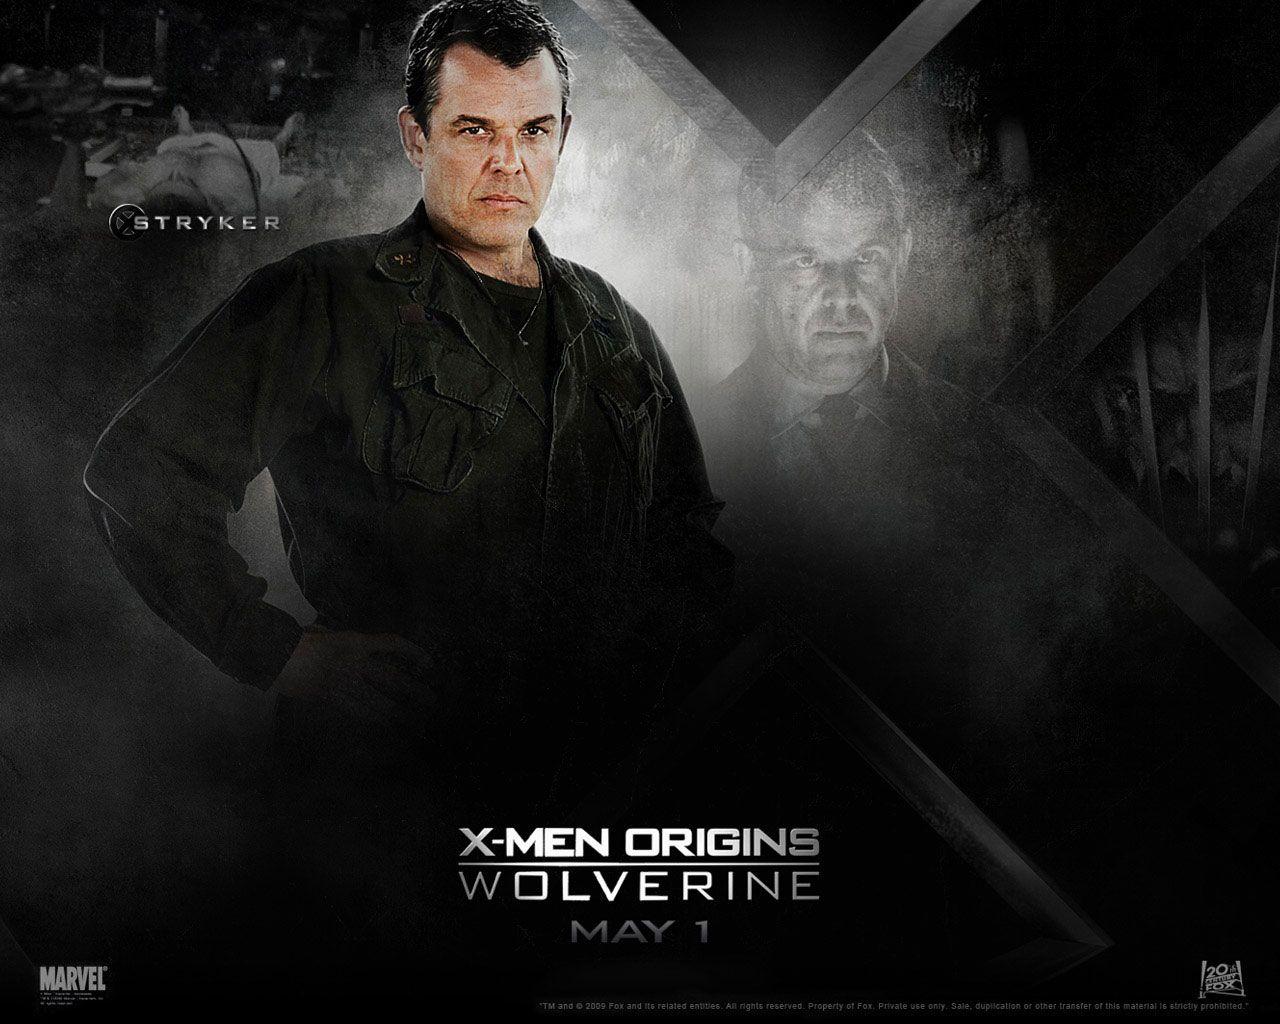 Men Origins Wolverine Wallpaper 1280x1024 px Free Download